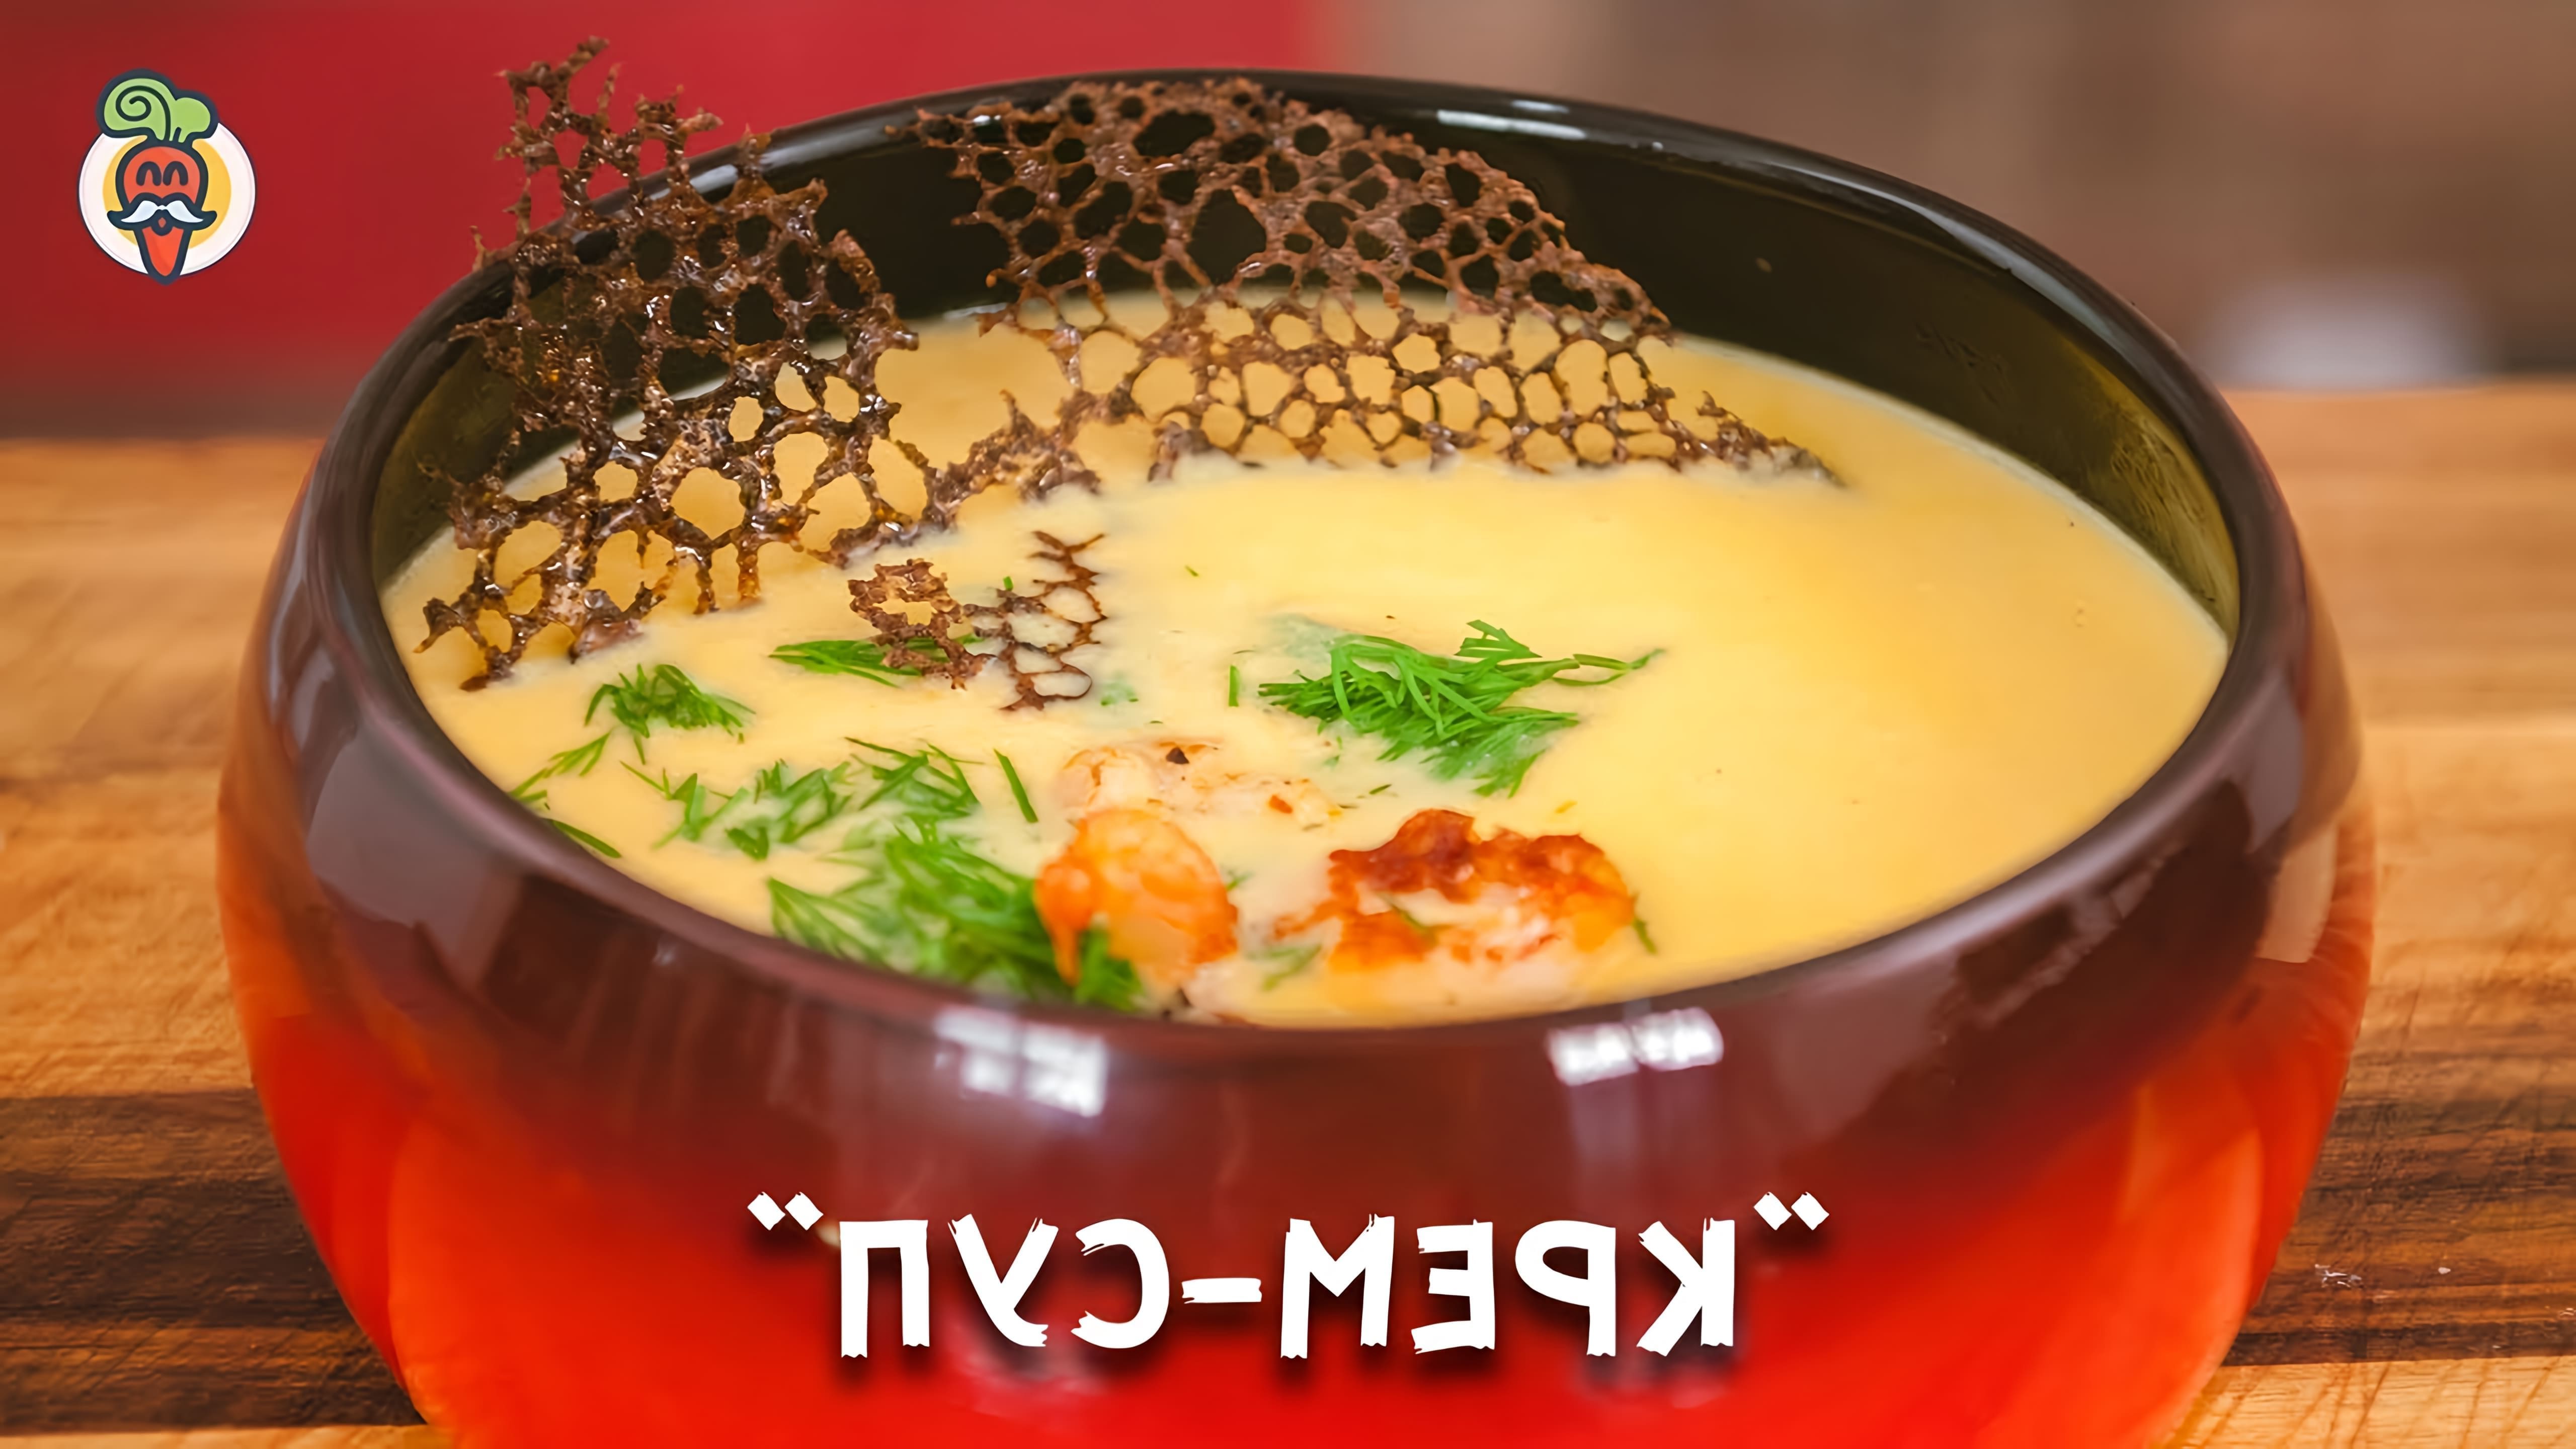 В этом видео демонстрируется процесс приготовления сырного крем-супа с креветками